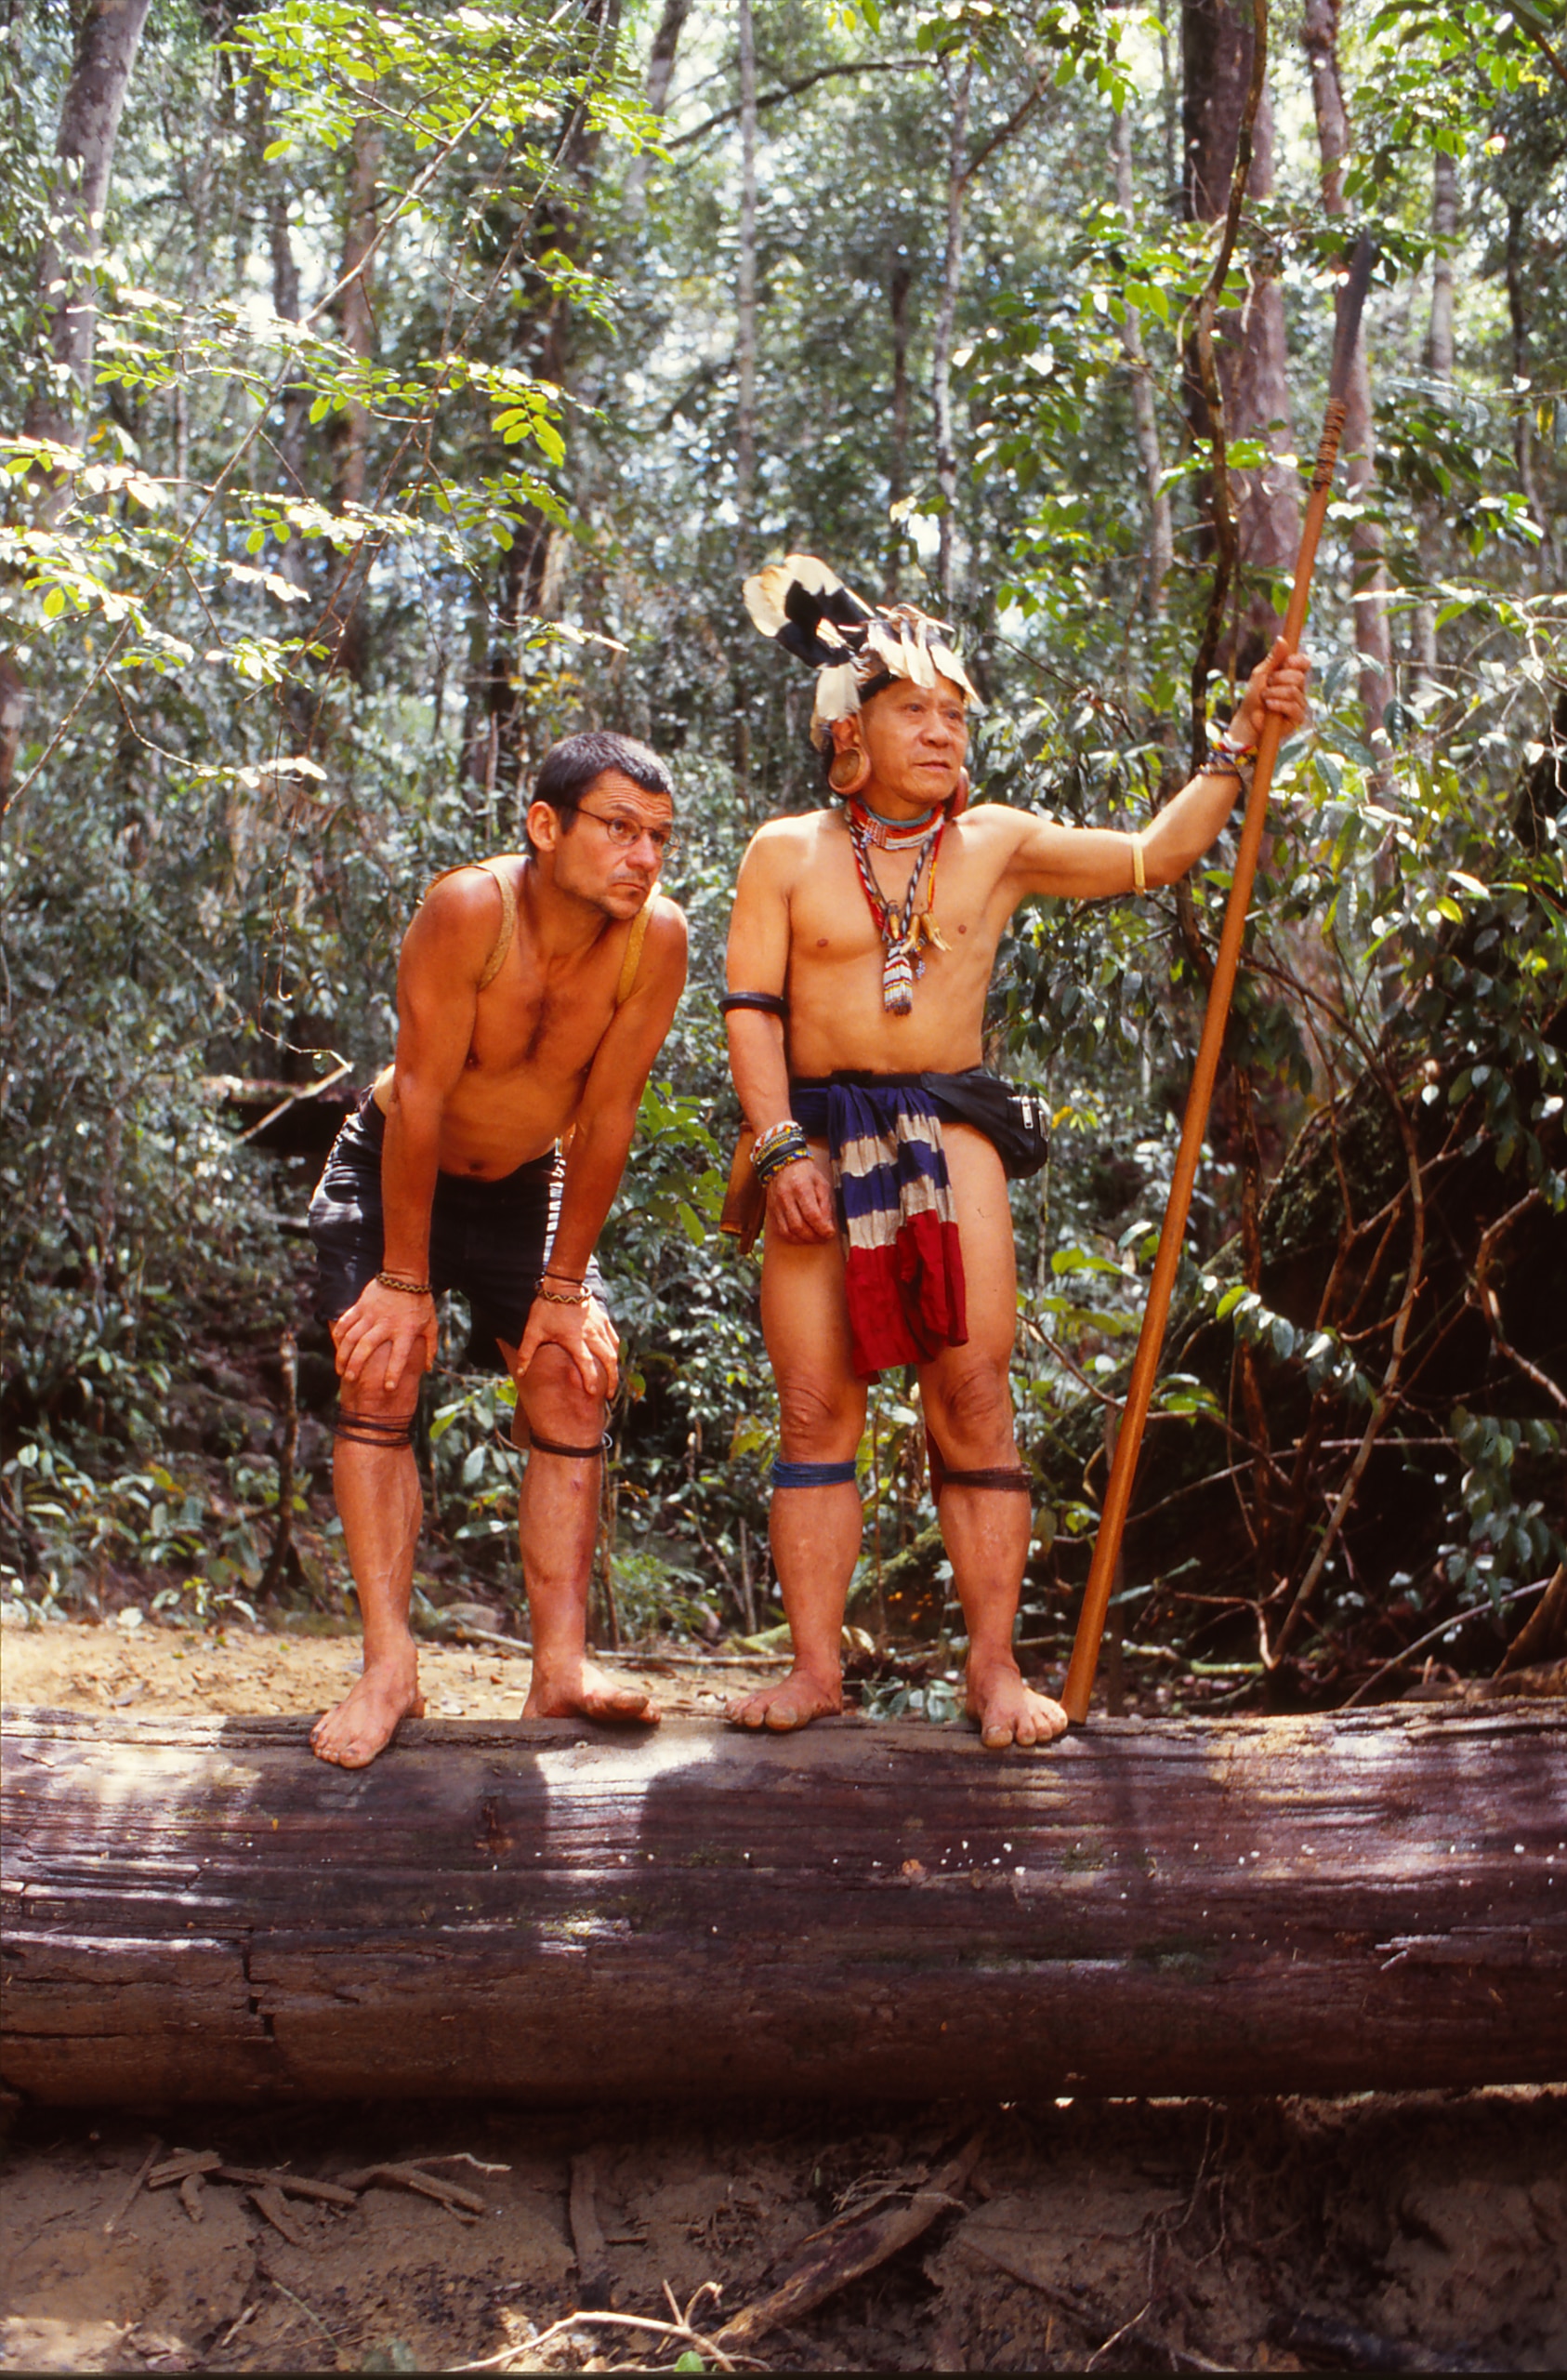 Правозащитник Бруно Мансер посвятил себя защите тропических лесов и живущих там людей. На снимке он слева в лесах Малайзии. (Фото Erik-Pauser, 1999)